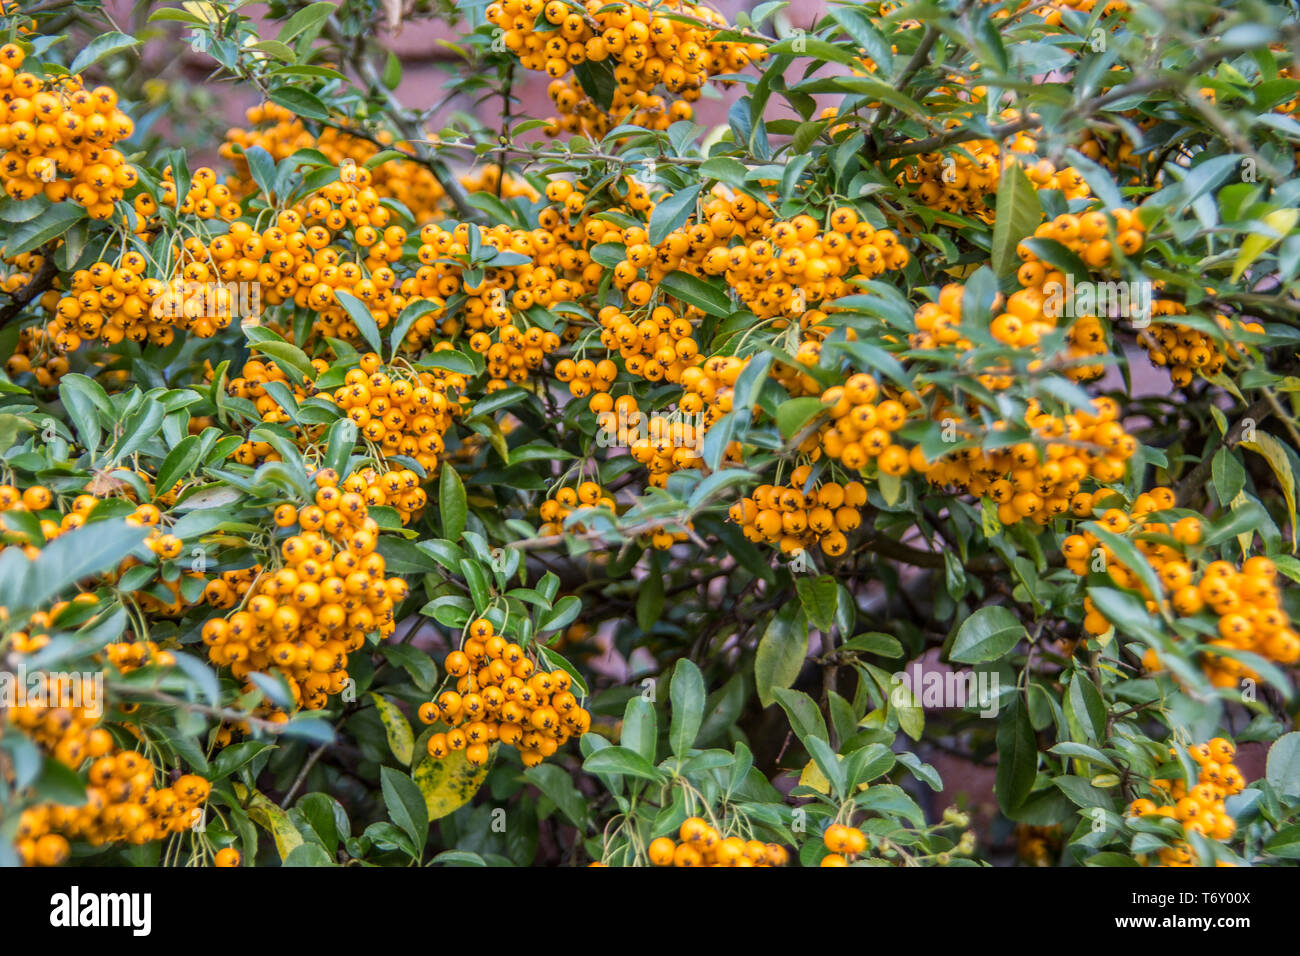 Firethorn evergreen shrub with yellow berries Stock Photo